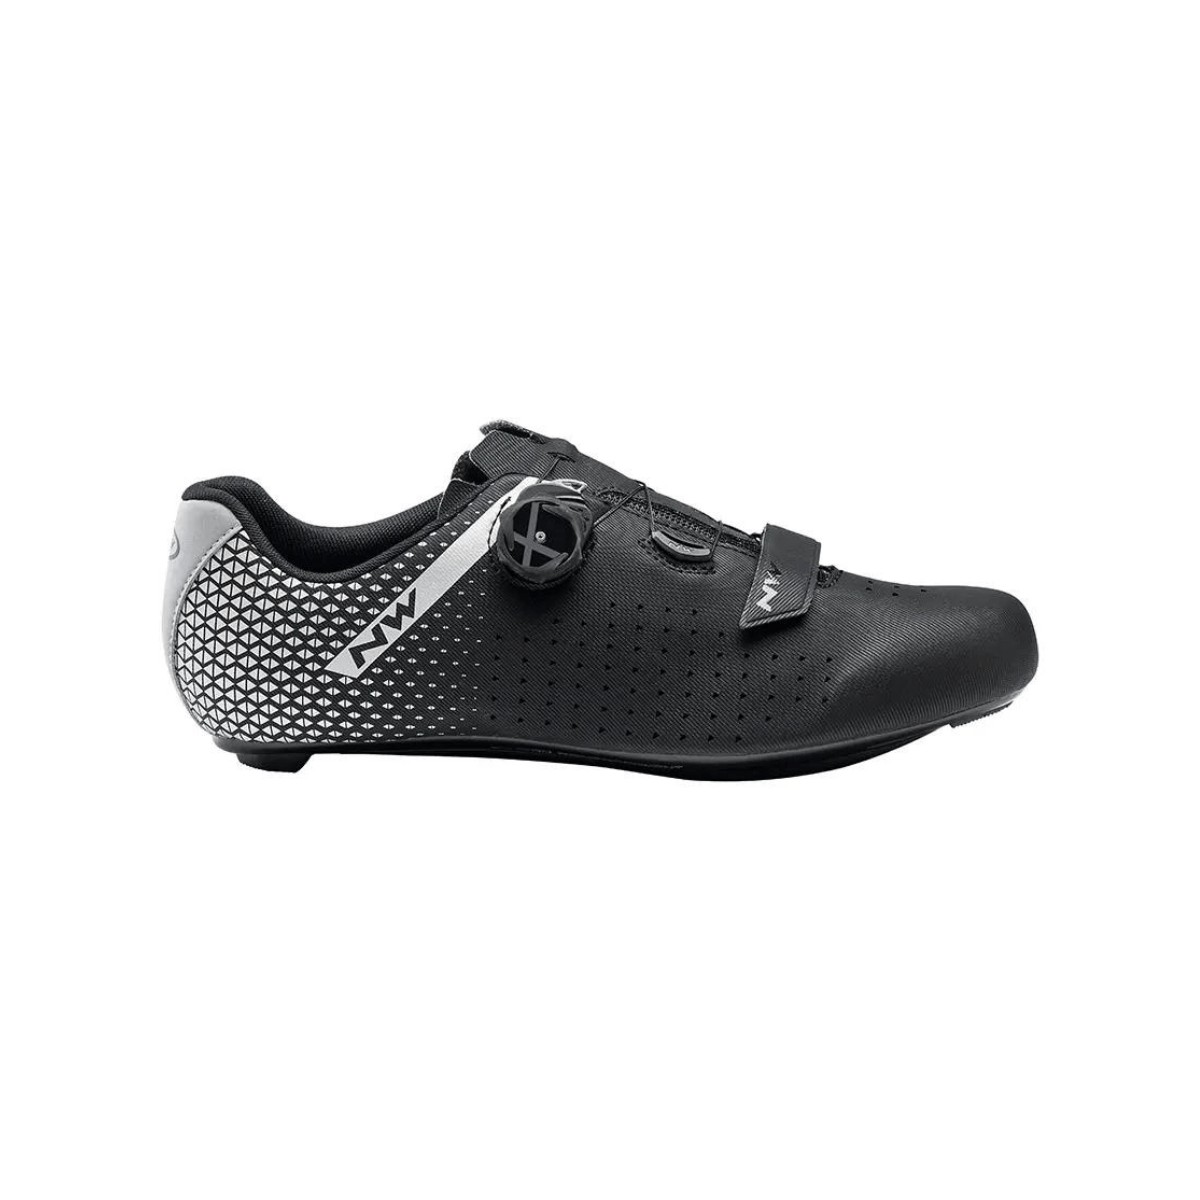 Northwave Core Plus 2 Shoes Black Silver, Size 40 - EUR